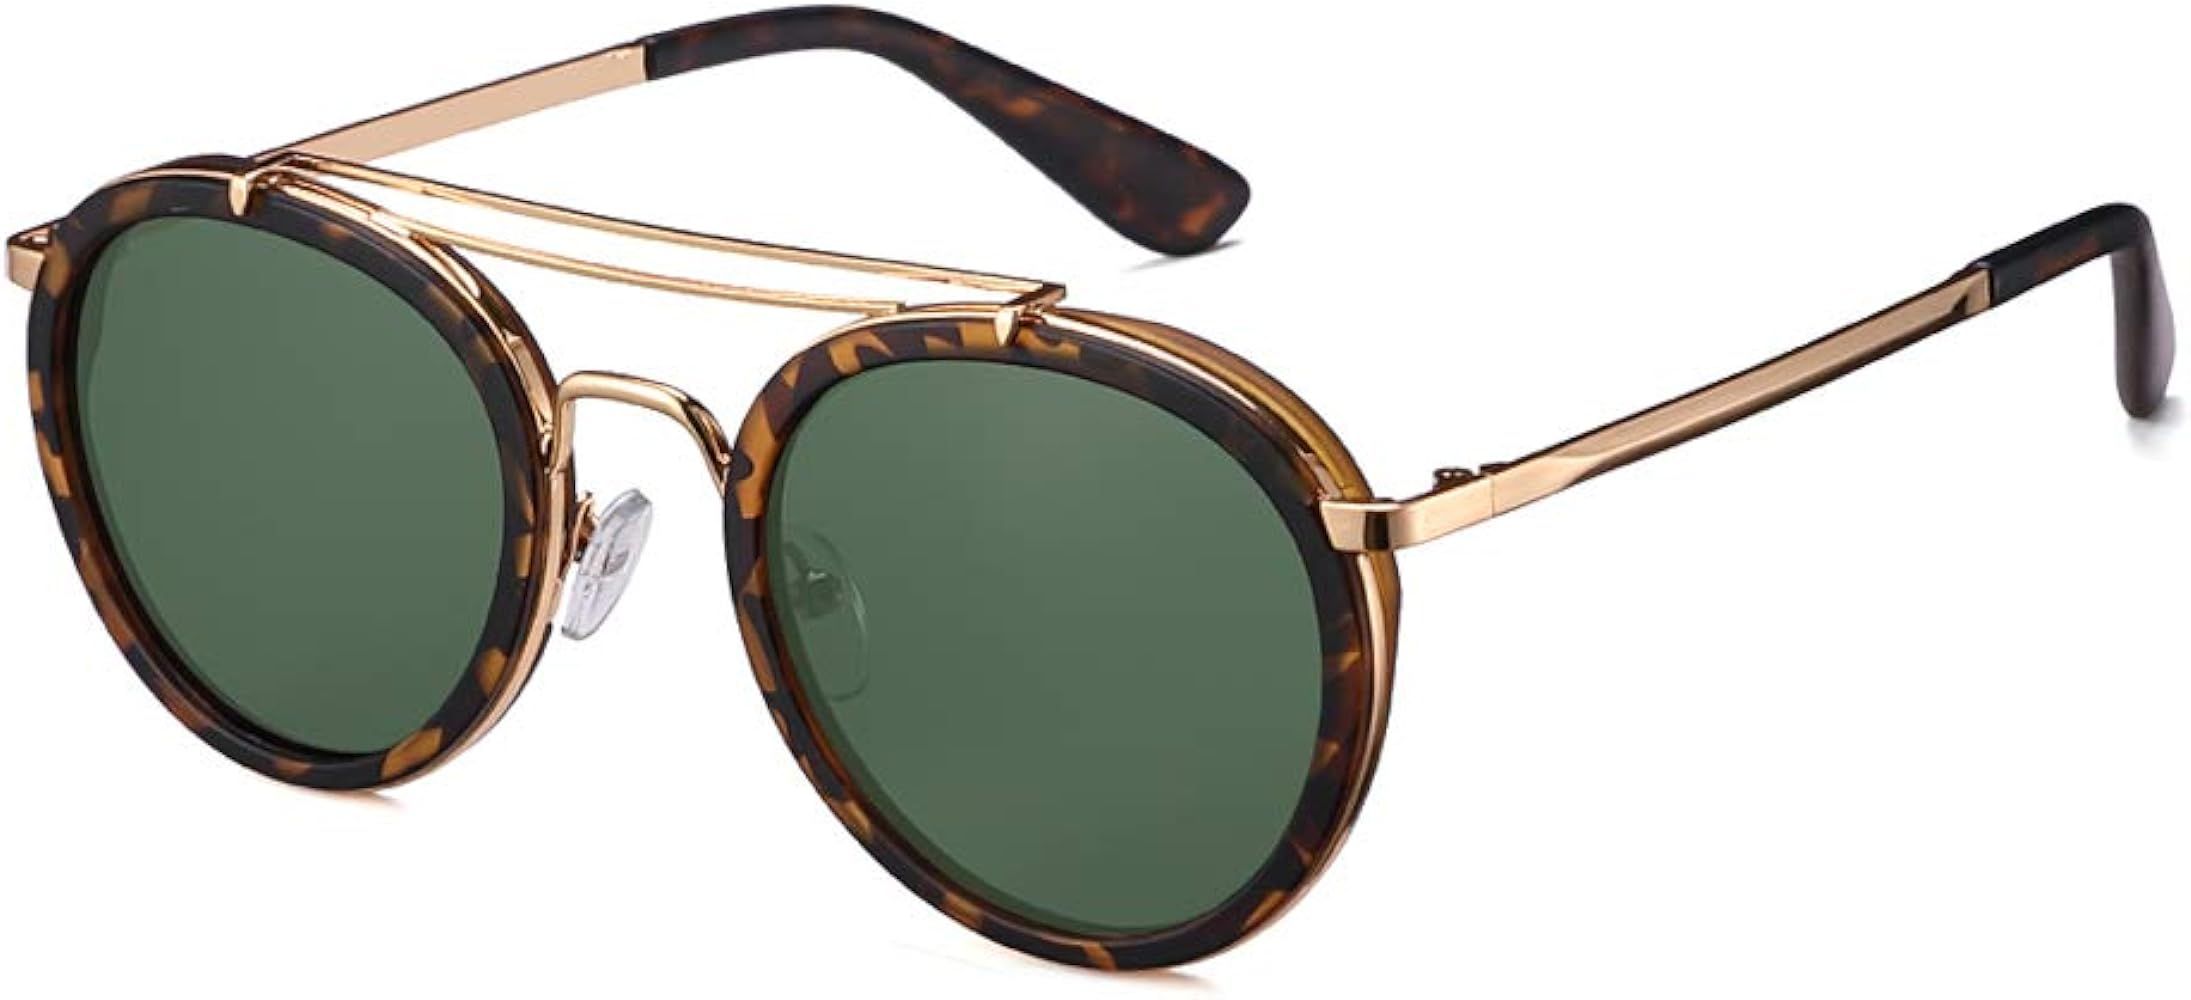 Vintage Steampunk Double Bridge Round Polarized Sunglasses Designer Metal Frame For Women Men | Amazon (US)